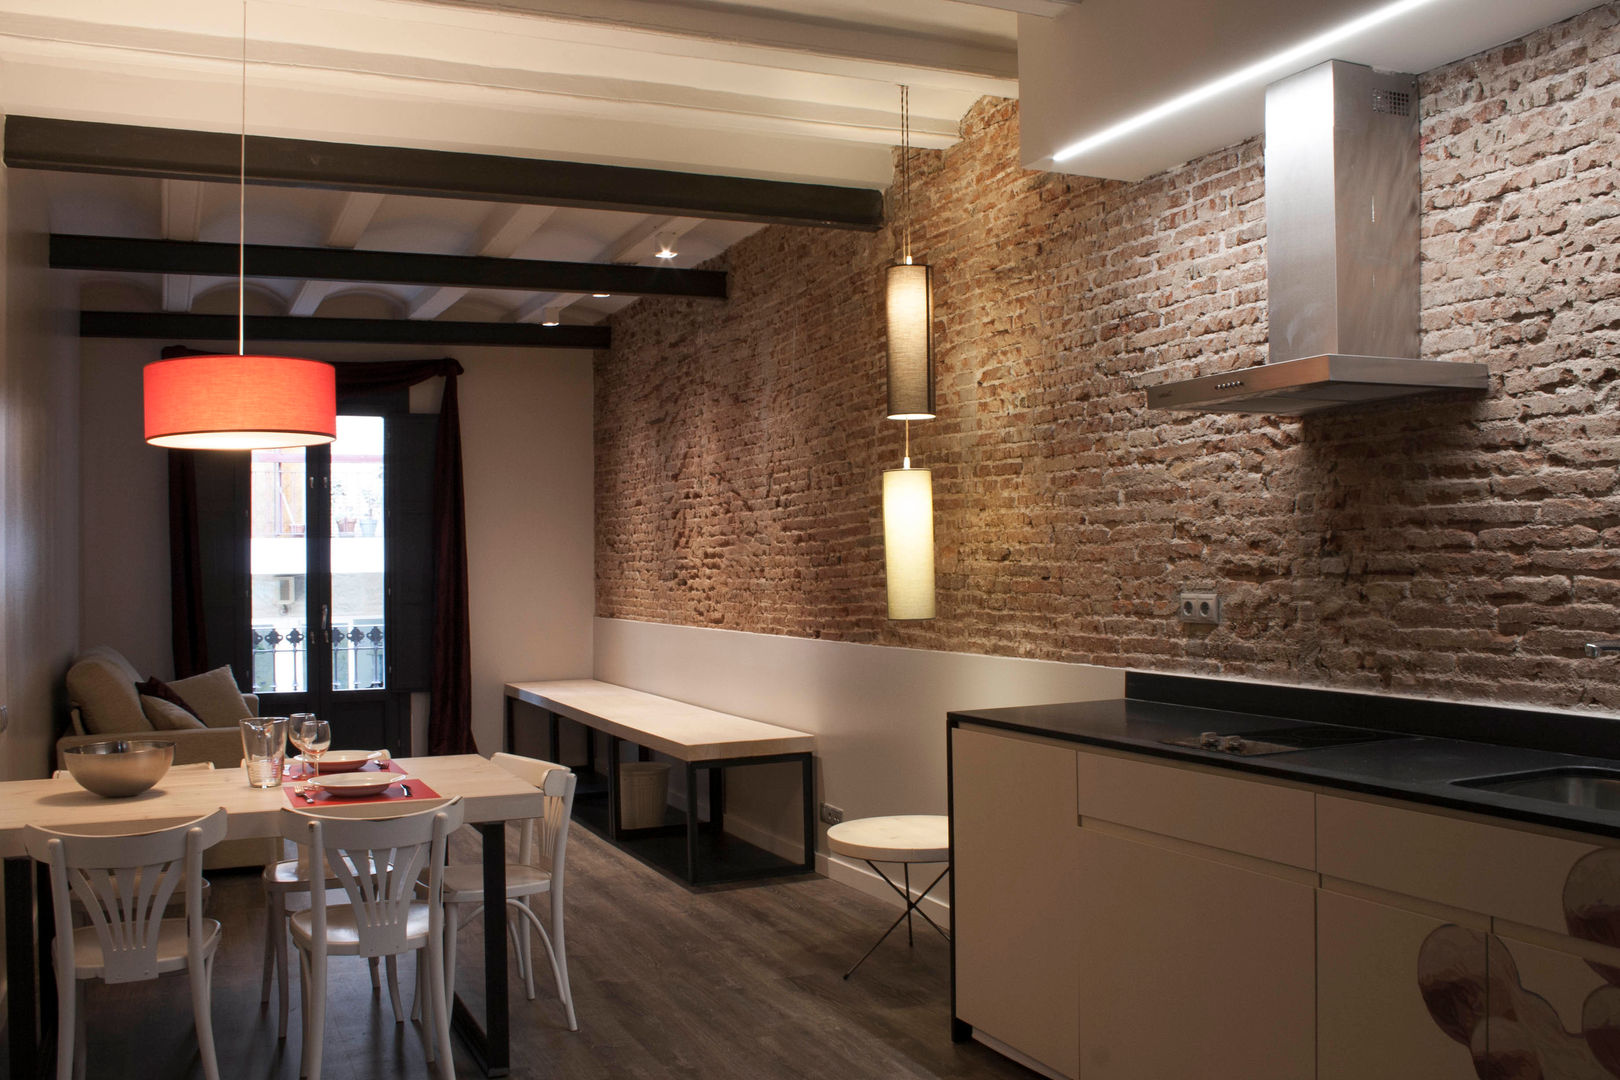 Rehabilitación edificio de viviendas en Barcelona, Lavolta Lavolta Commercial spaces Hotels